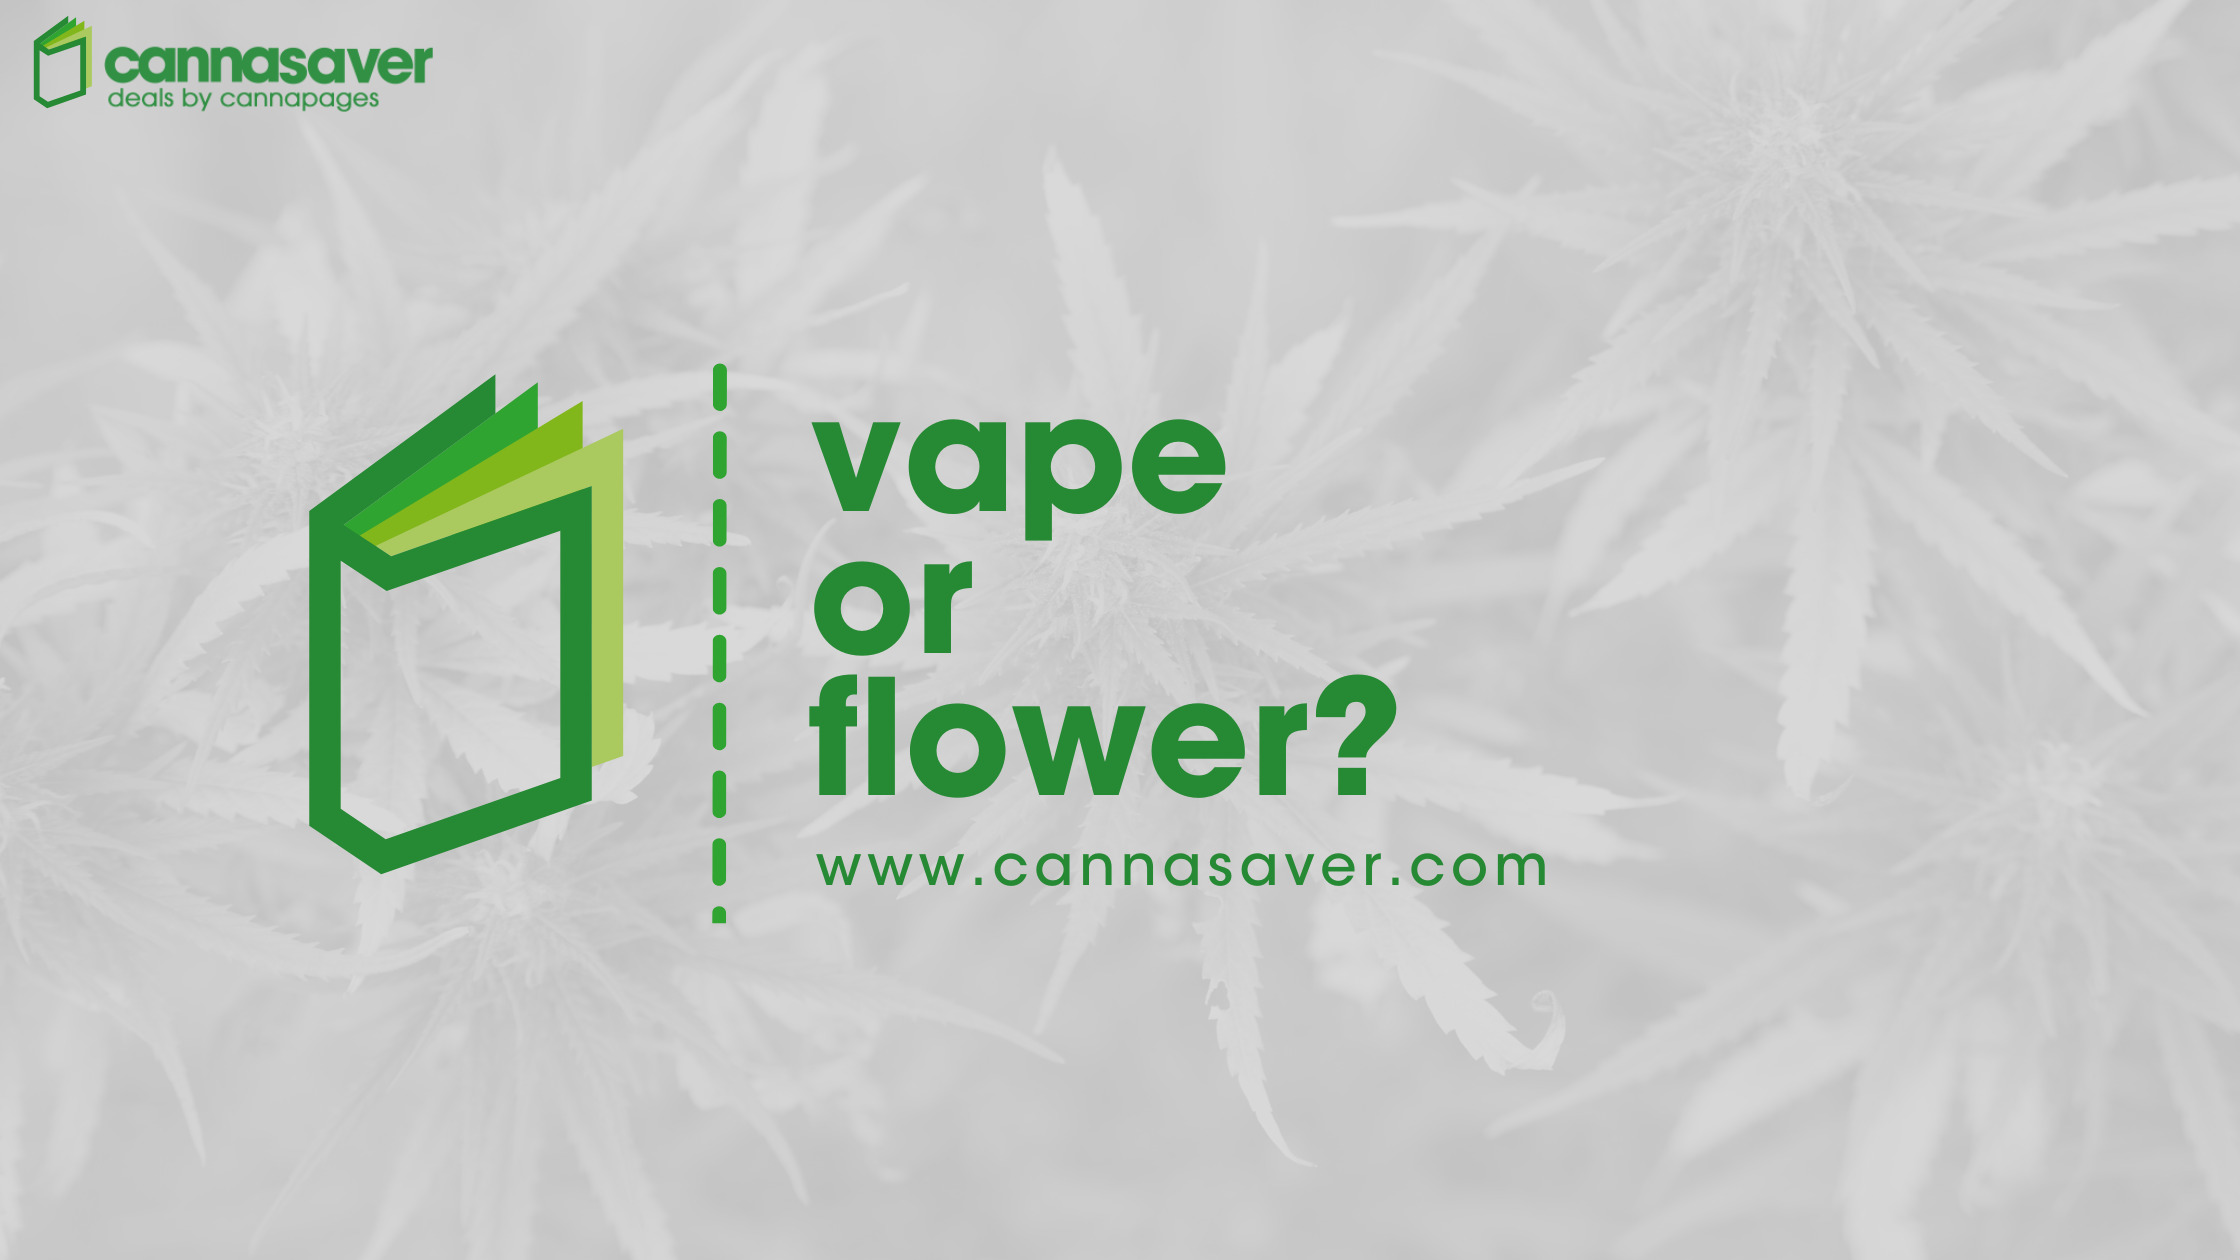 Vape or Flower?